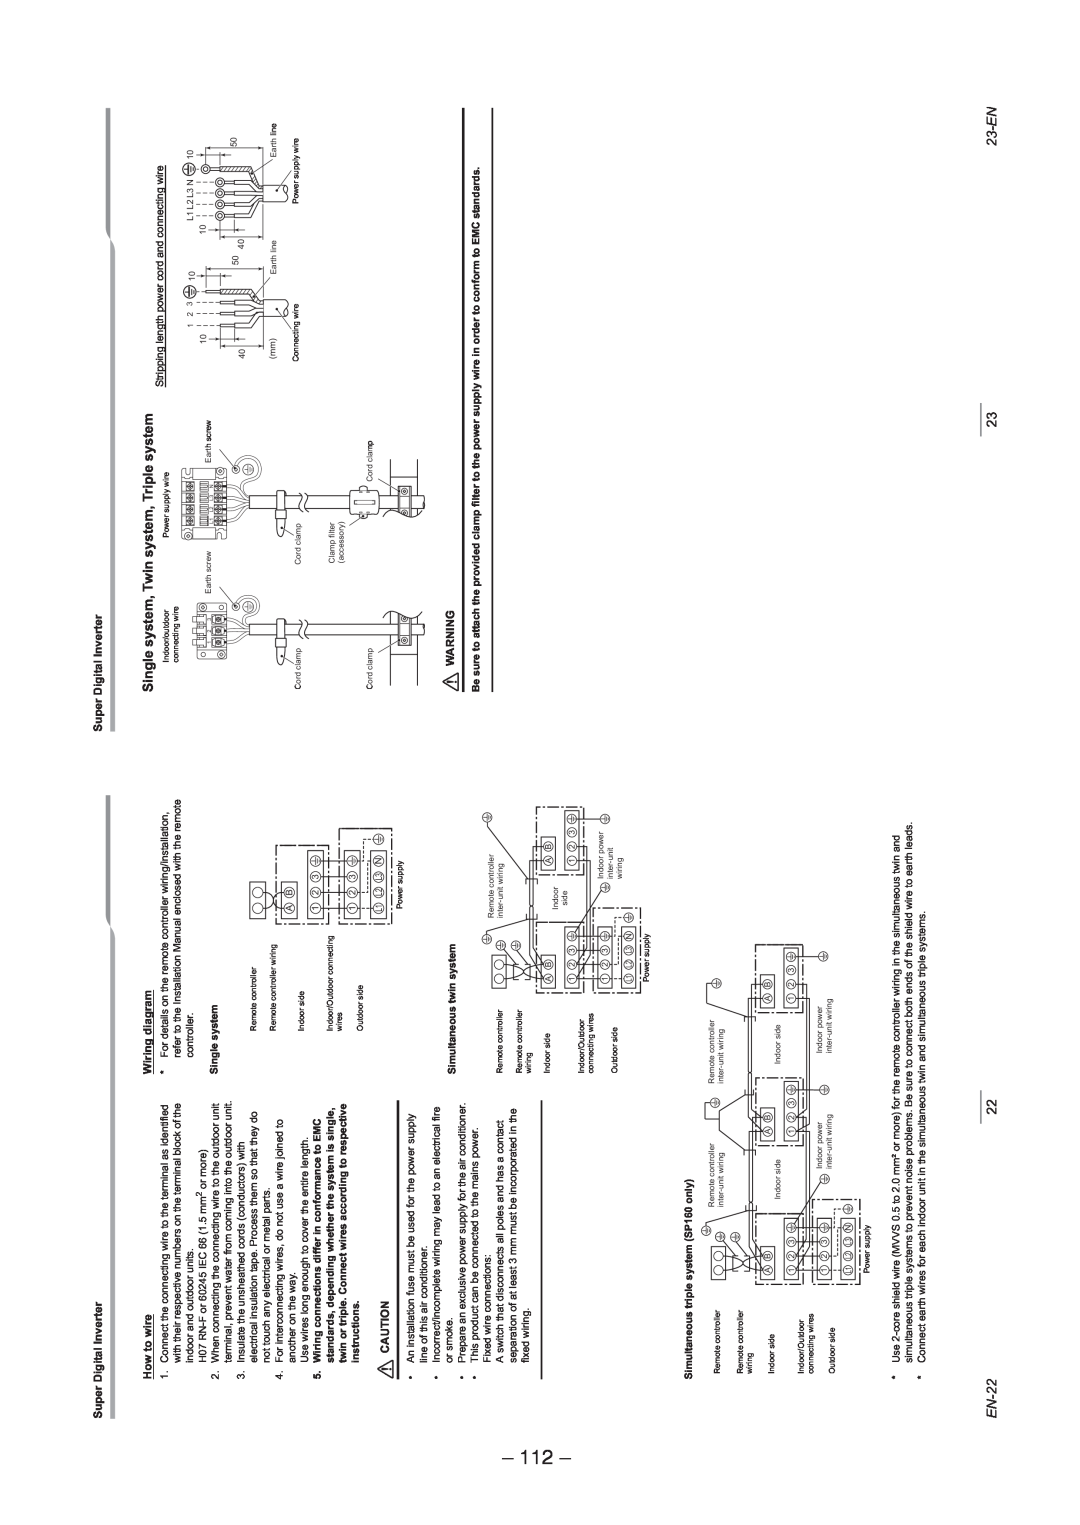 Toshiba RAV-SP1104AT8ZG-TR, RAV-SP1104AT8-TR, RAV-SP1604AT8Z-E 112, Single system, Twin system, Triple system, EN-22, 23-EN 